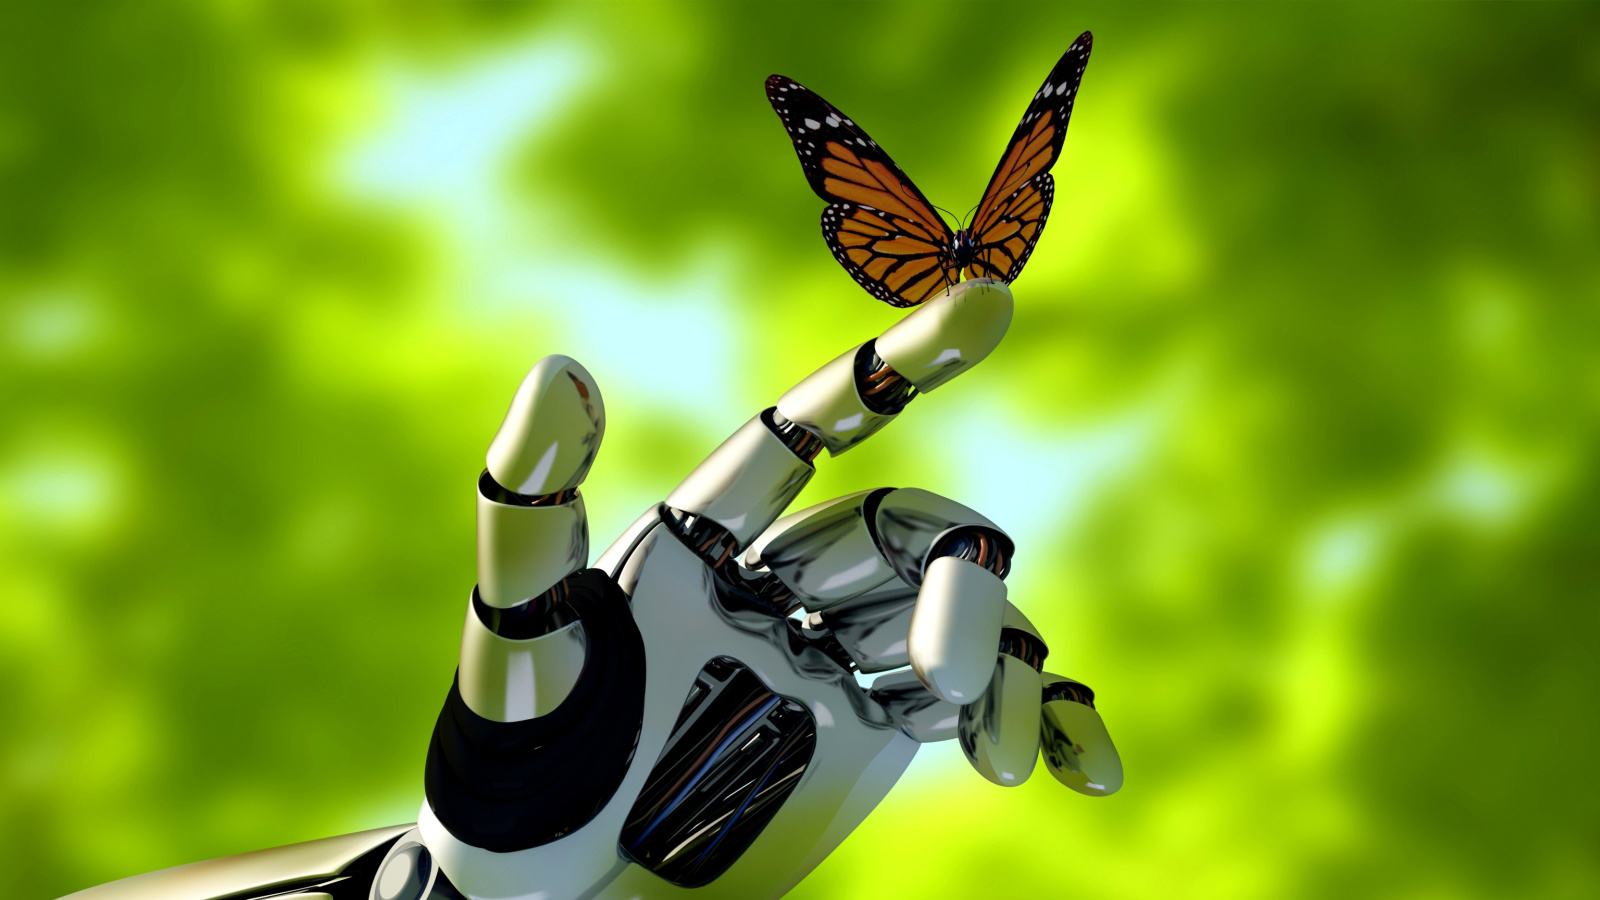 Robot hand and butterfly screenshot #1 1600x900